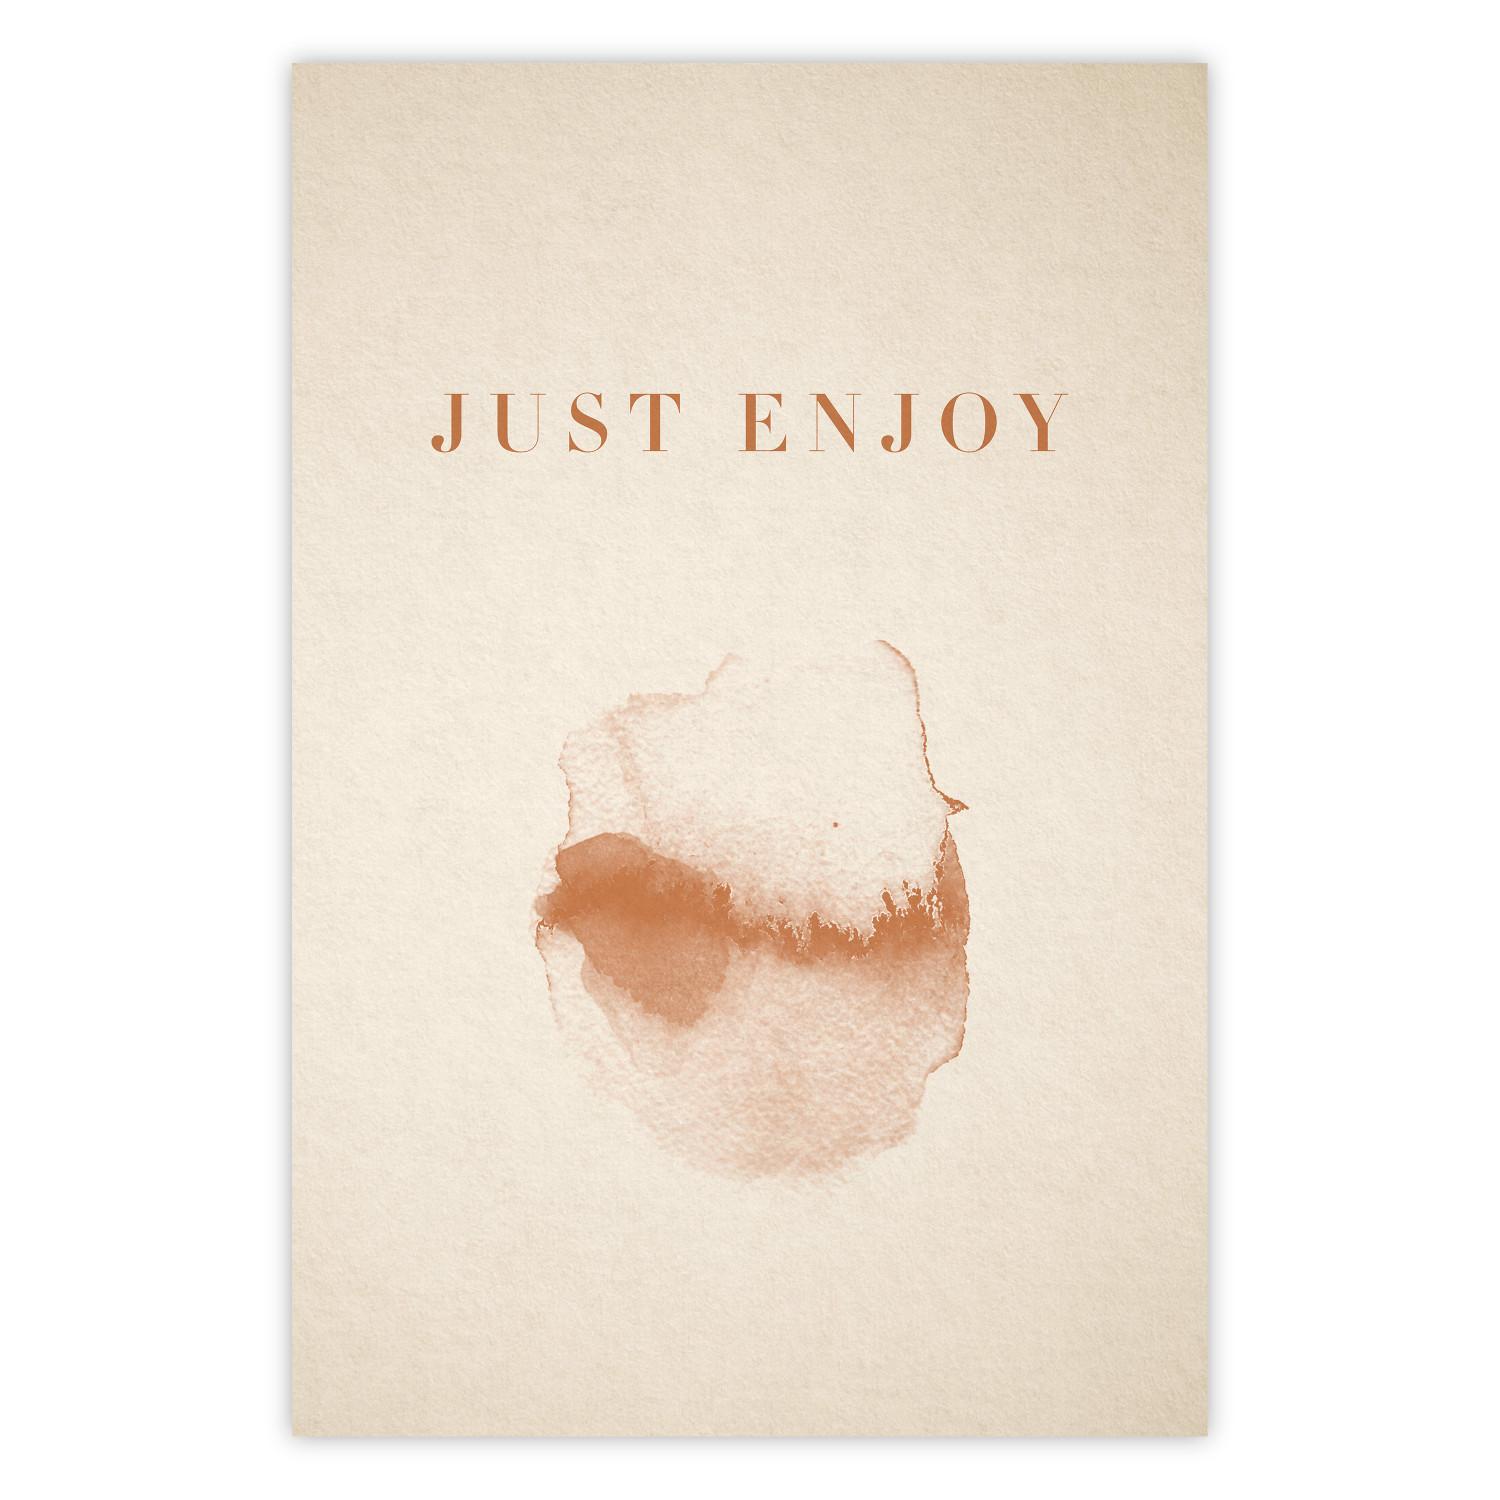 Cartel Just Enjoy - letra inglesa y motivo de acuarela sobre fondo beige